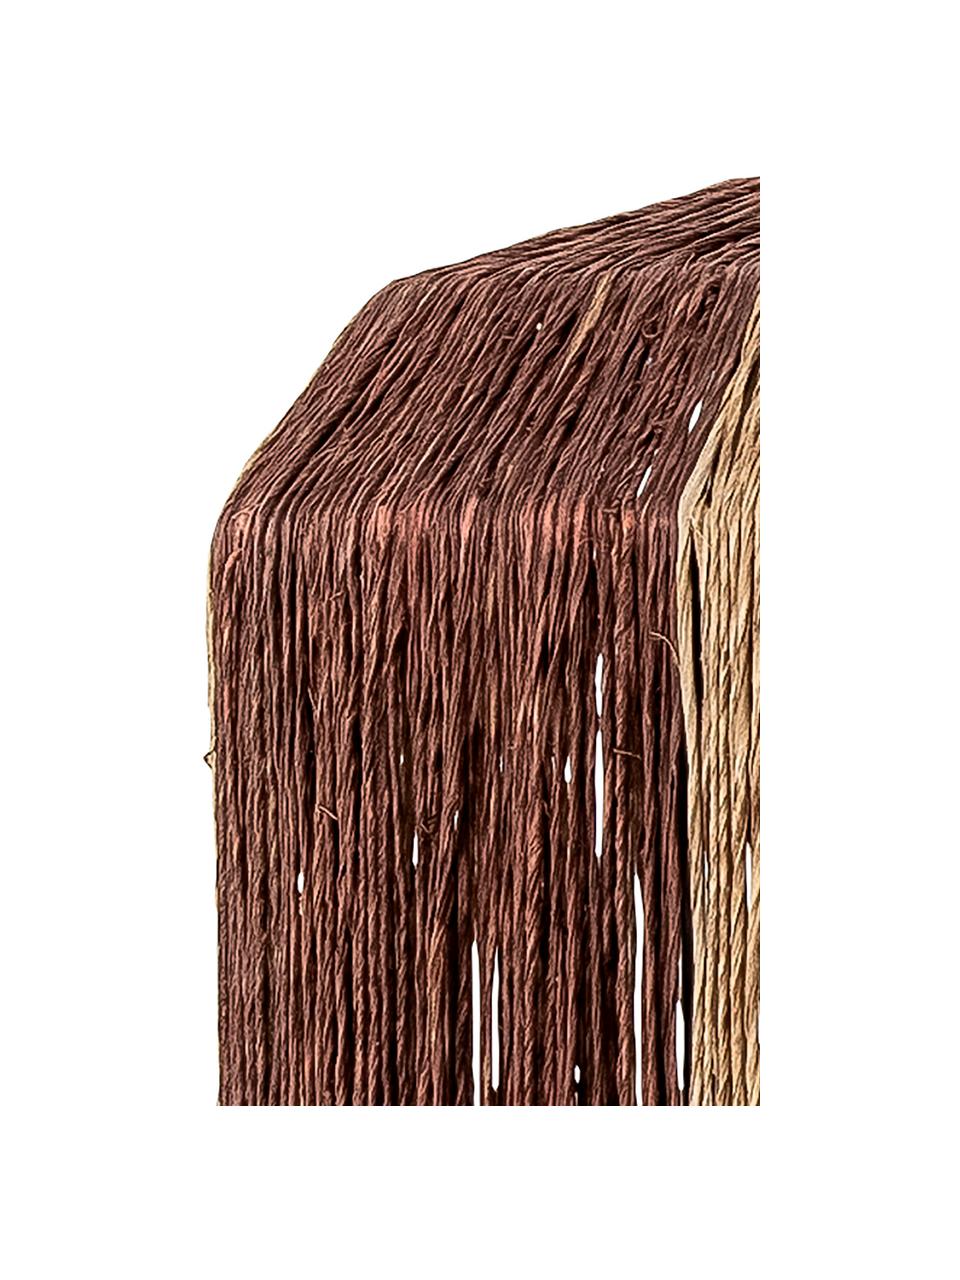 Lampa wisząca z trawy morskiej Tano, Beżowy, brązowy, Ø 27 x W 40 cm